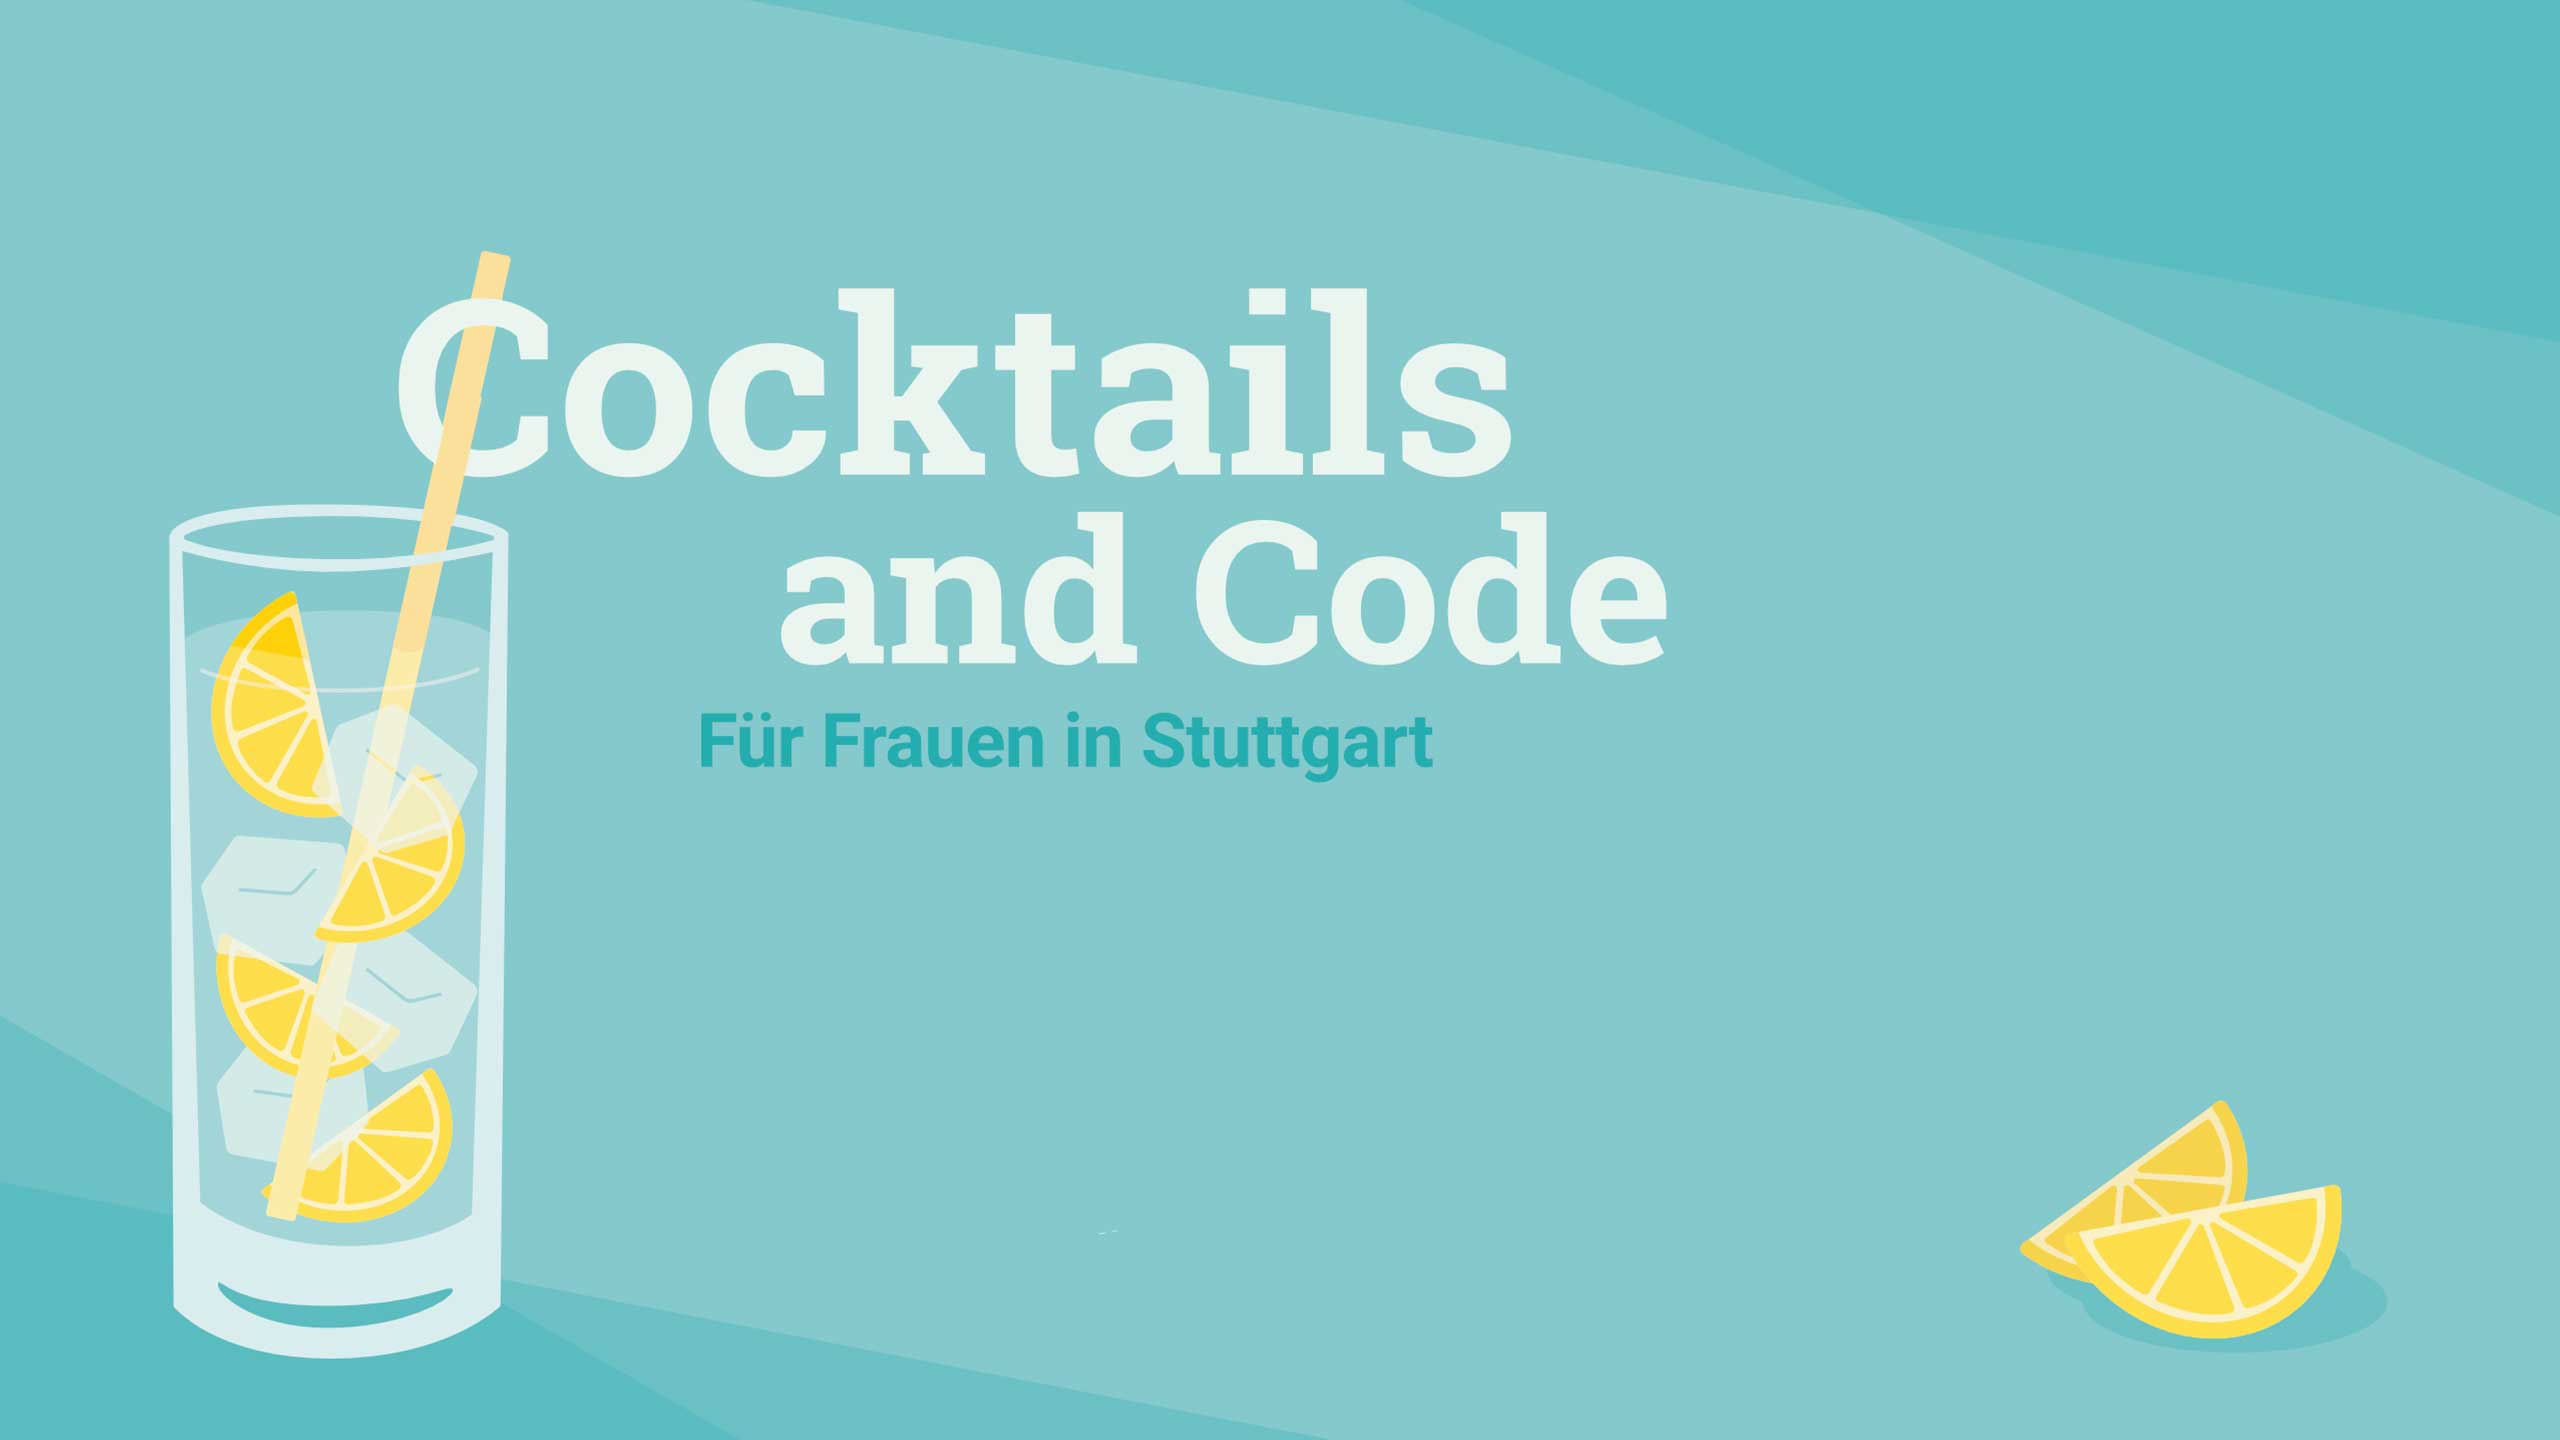 Cocktails & Code: HackerEthik - Cocktails & Code für Frauen in der IT in Stuttgart / copy Ready to Code e.V.